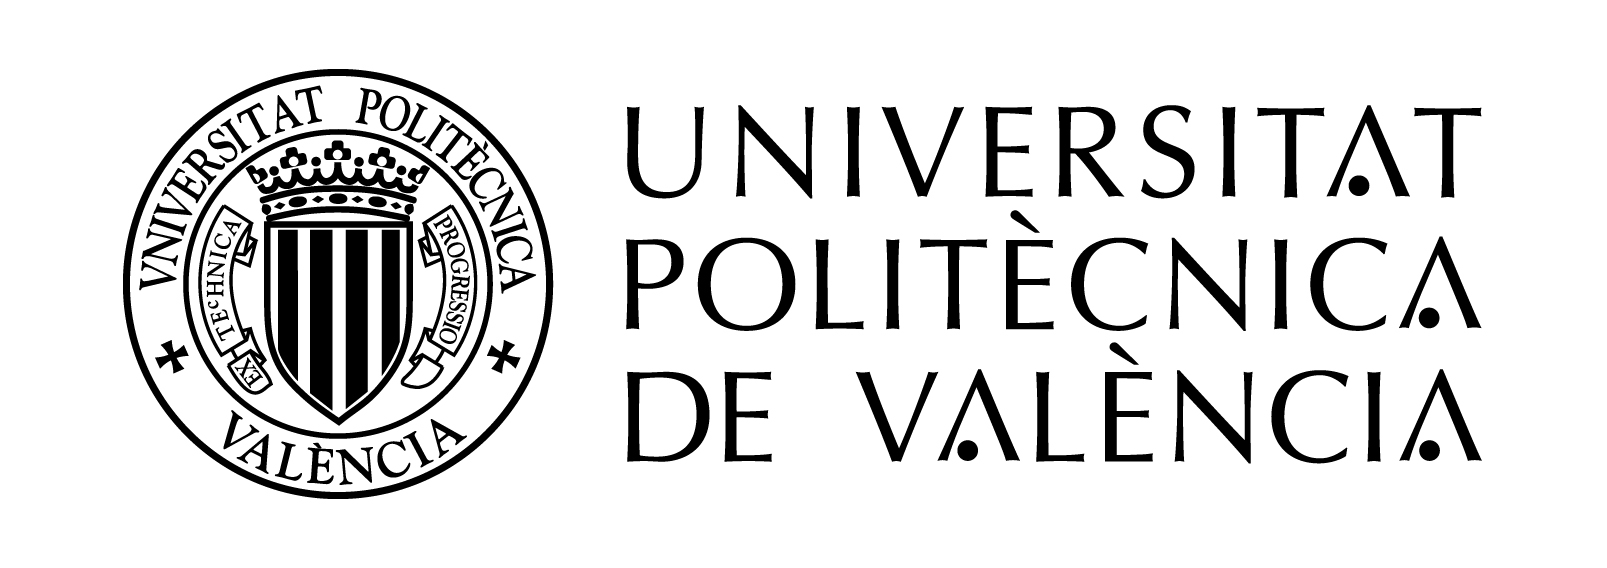 universidad de valencia vpn